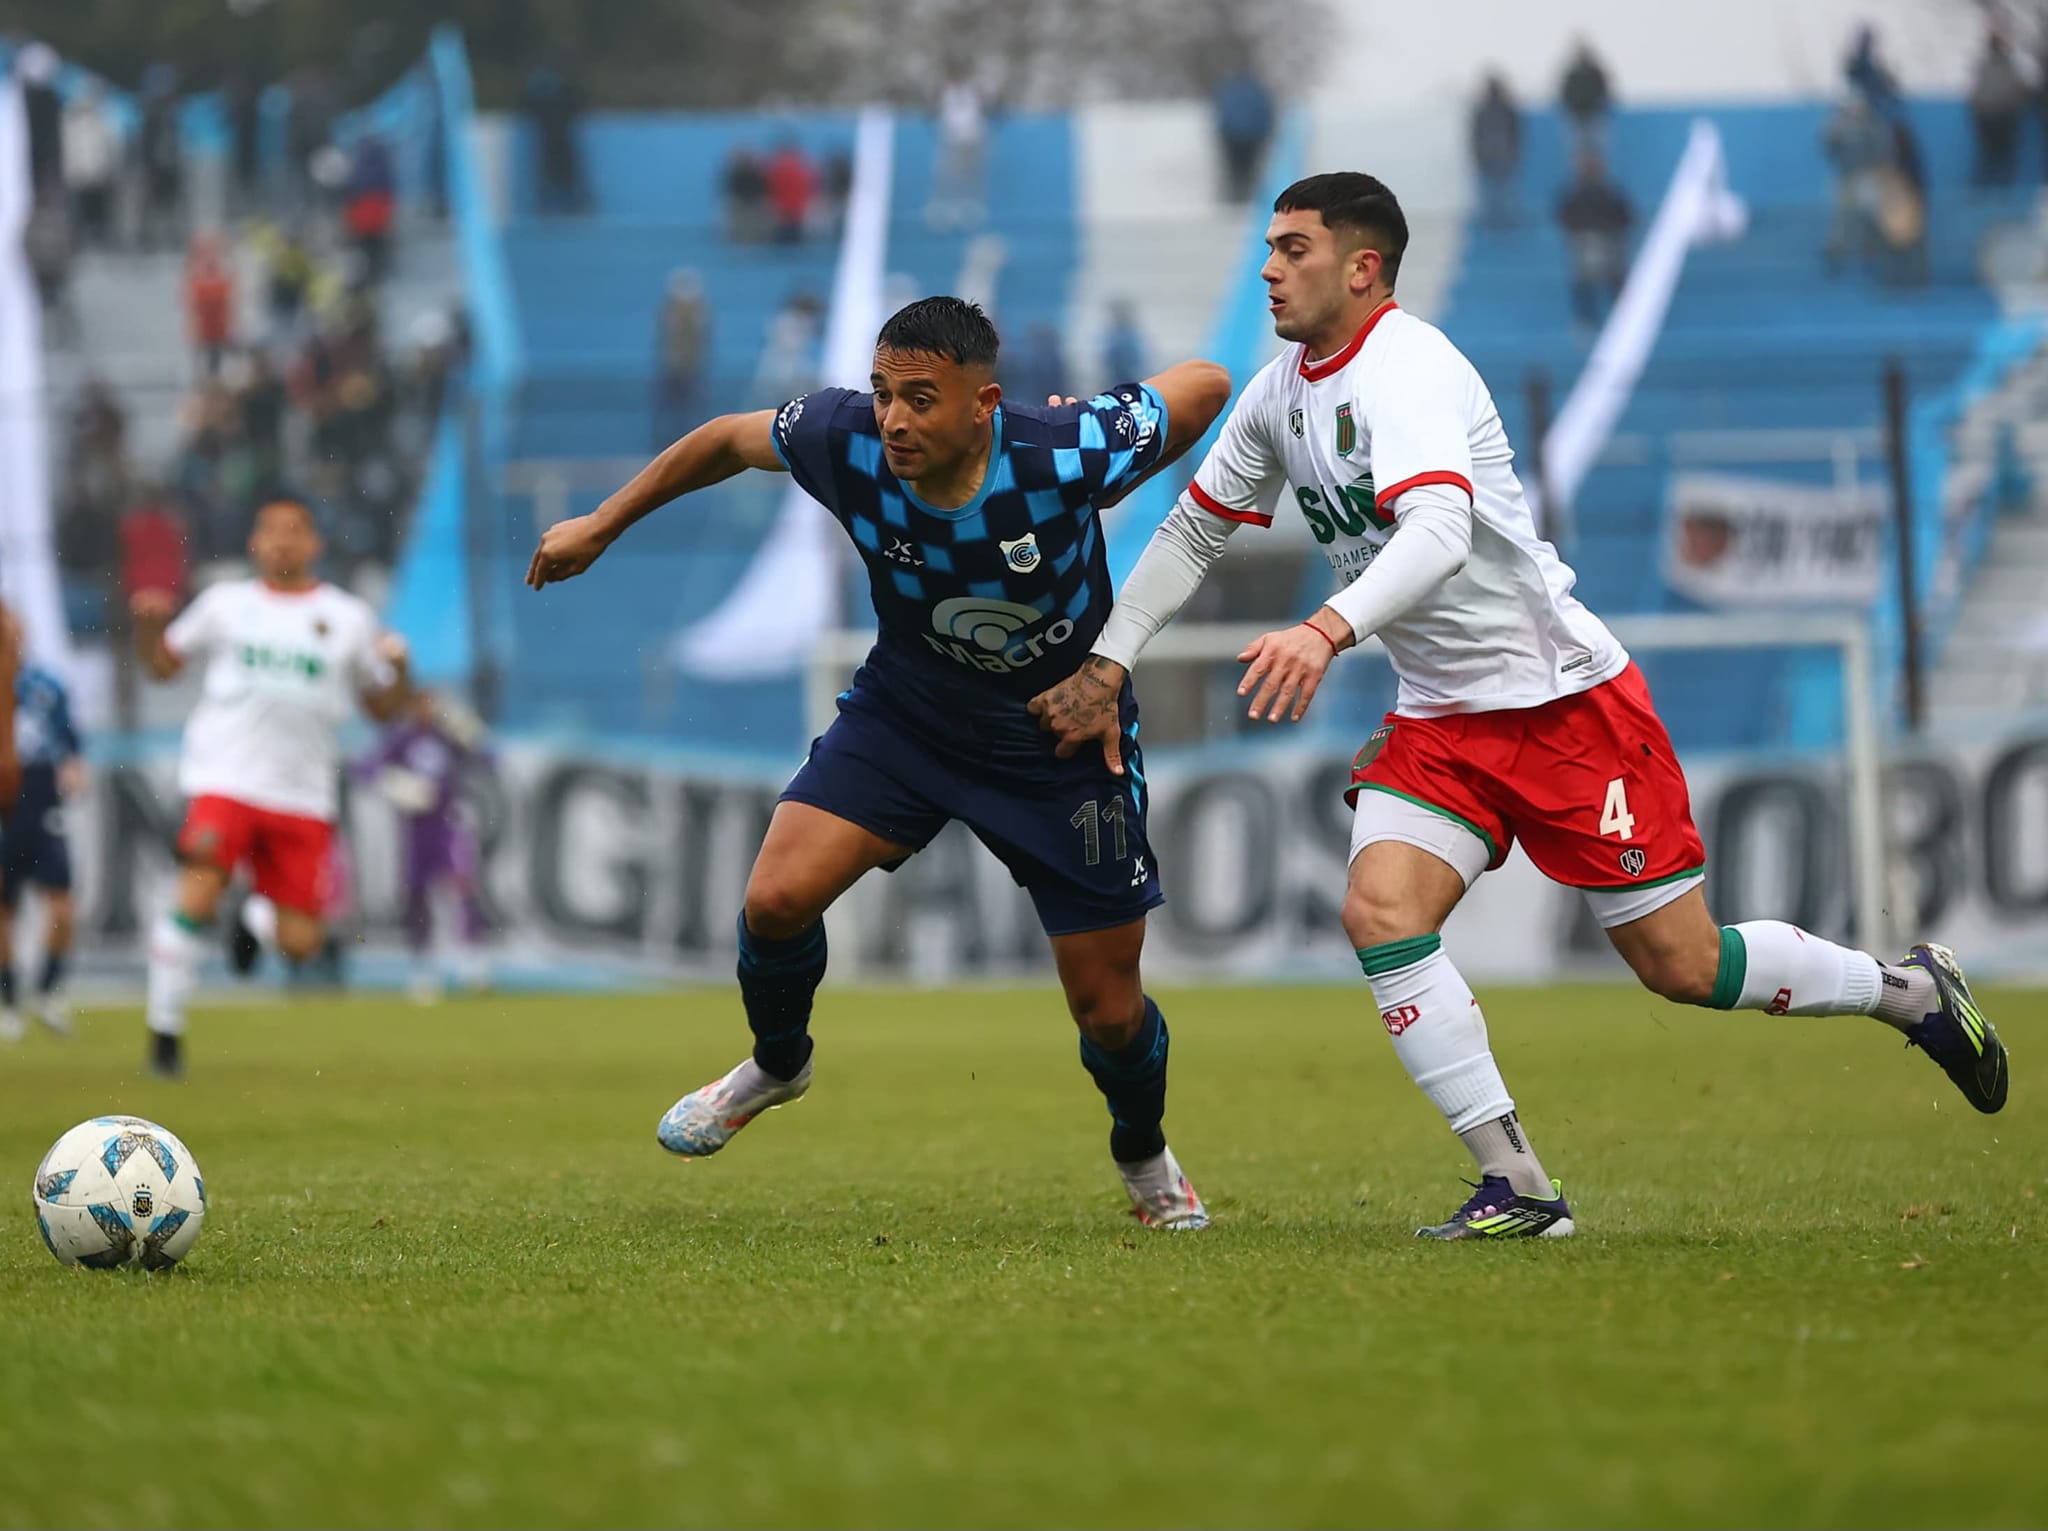 Más problemas que fútbol se vio este domingo en el “23 de Agosto”: Gimnasia de Jujuy y Agropecuario empataron en un accidentando duelo.